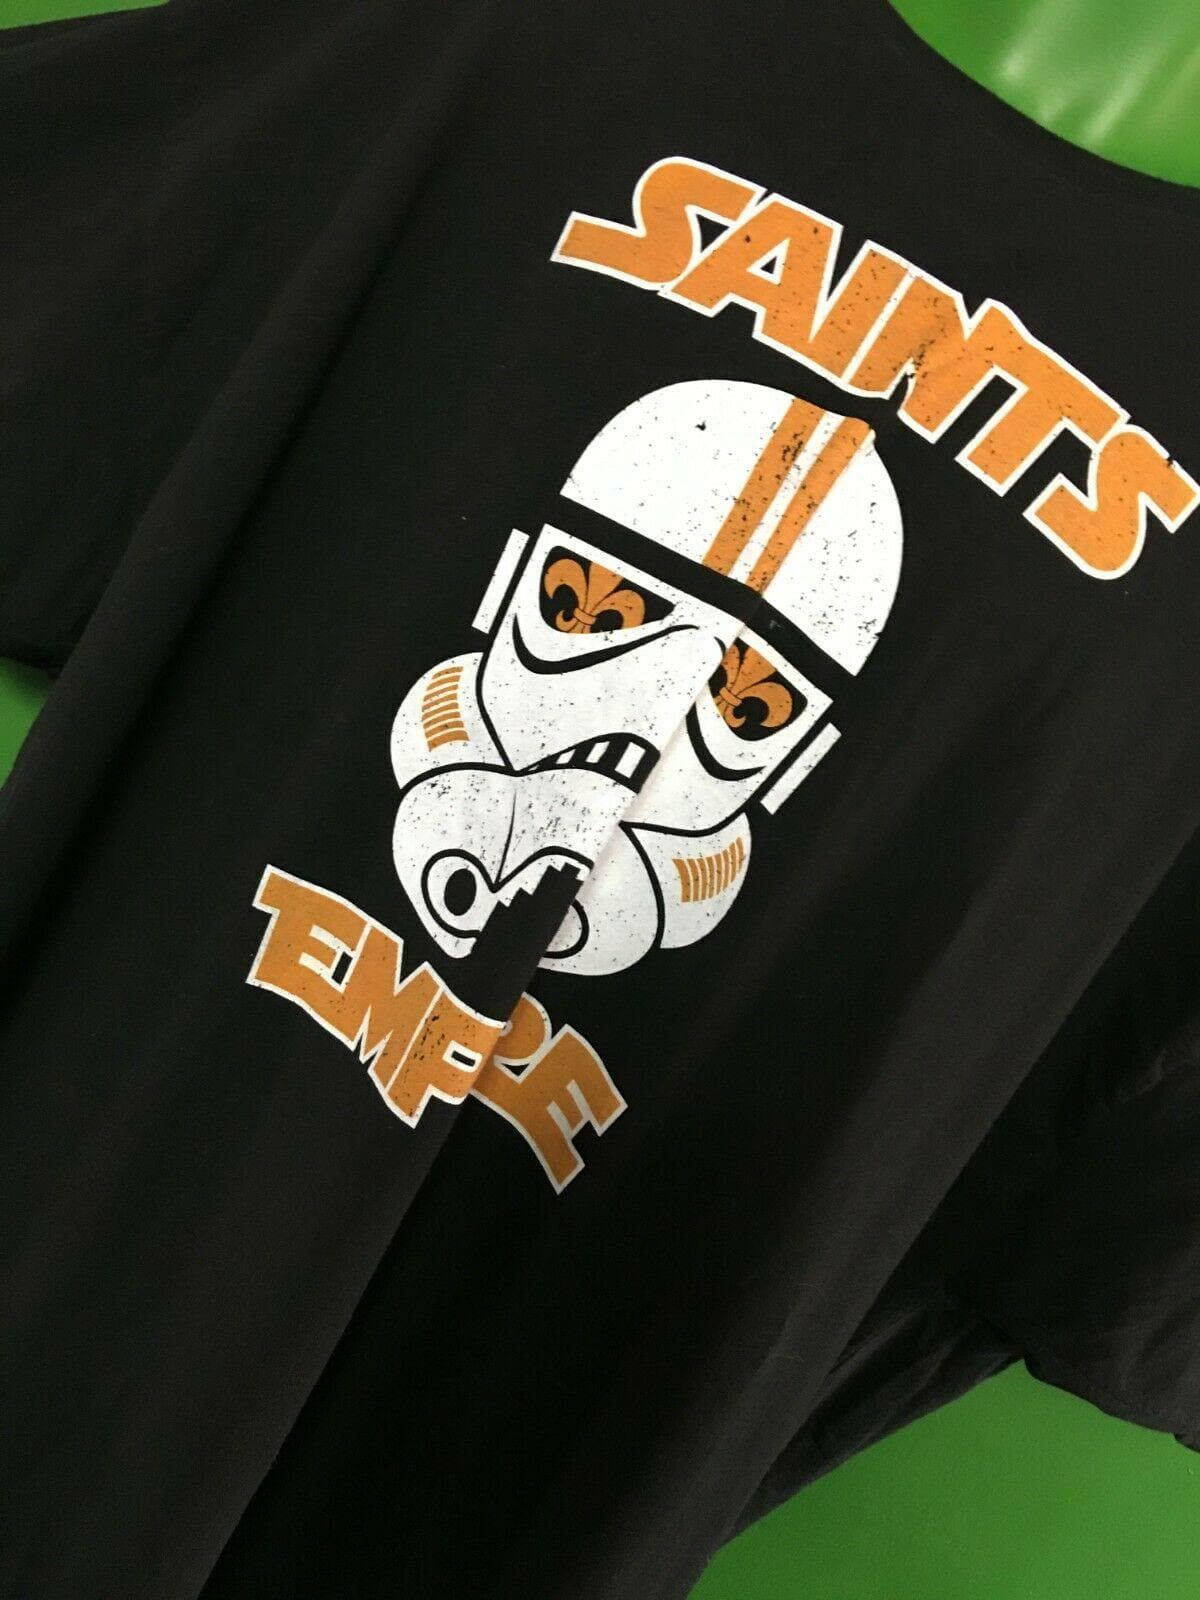 NFL New Orleans Saints Hanes Star Wars T-Shirt Men's 4X-Large